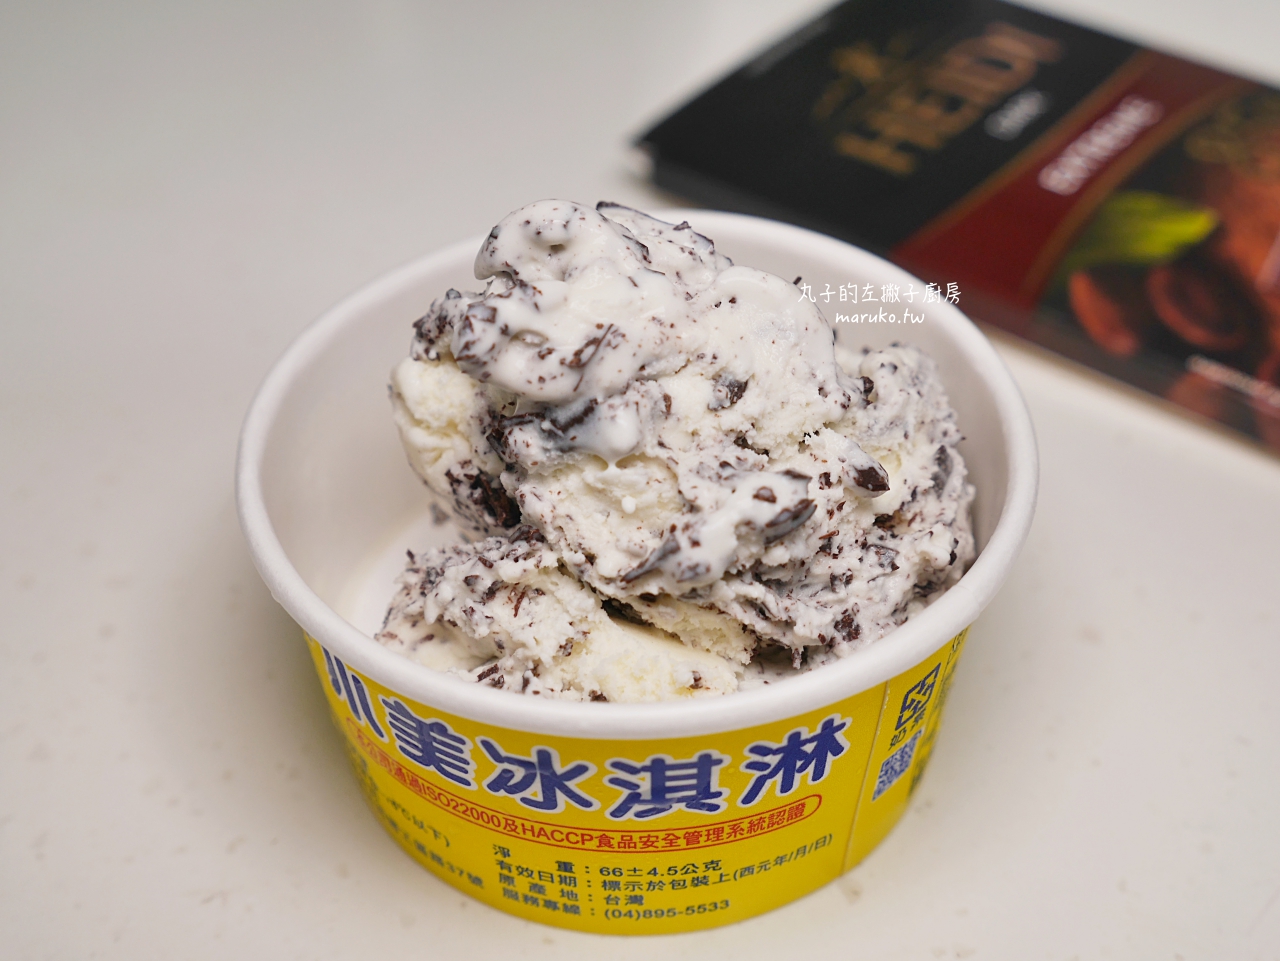 【食譜】黑巧克力脆片冰淇淋 小美冰淇淋 X 瑞士赫蒂 85% 黑巧克力 高級感創意吃法